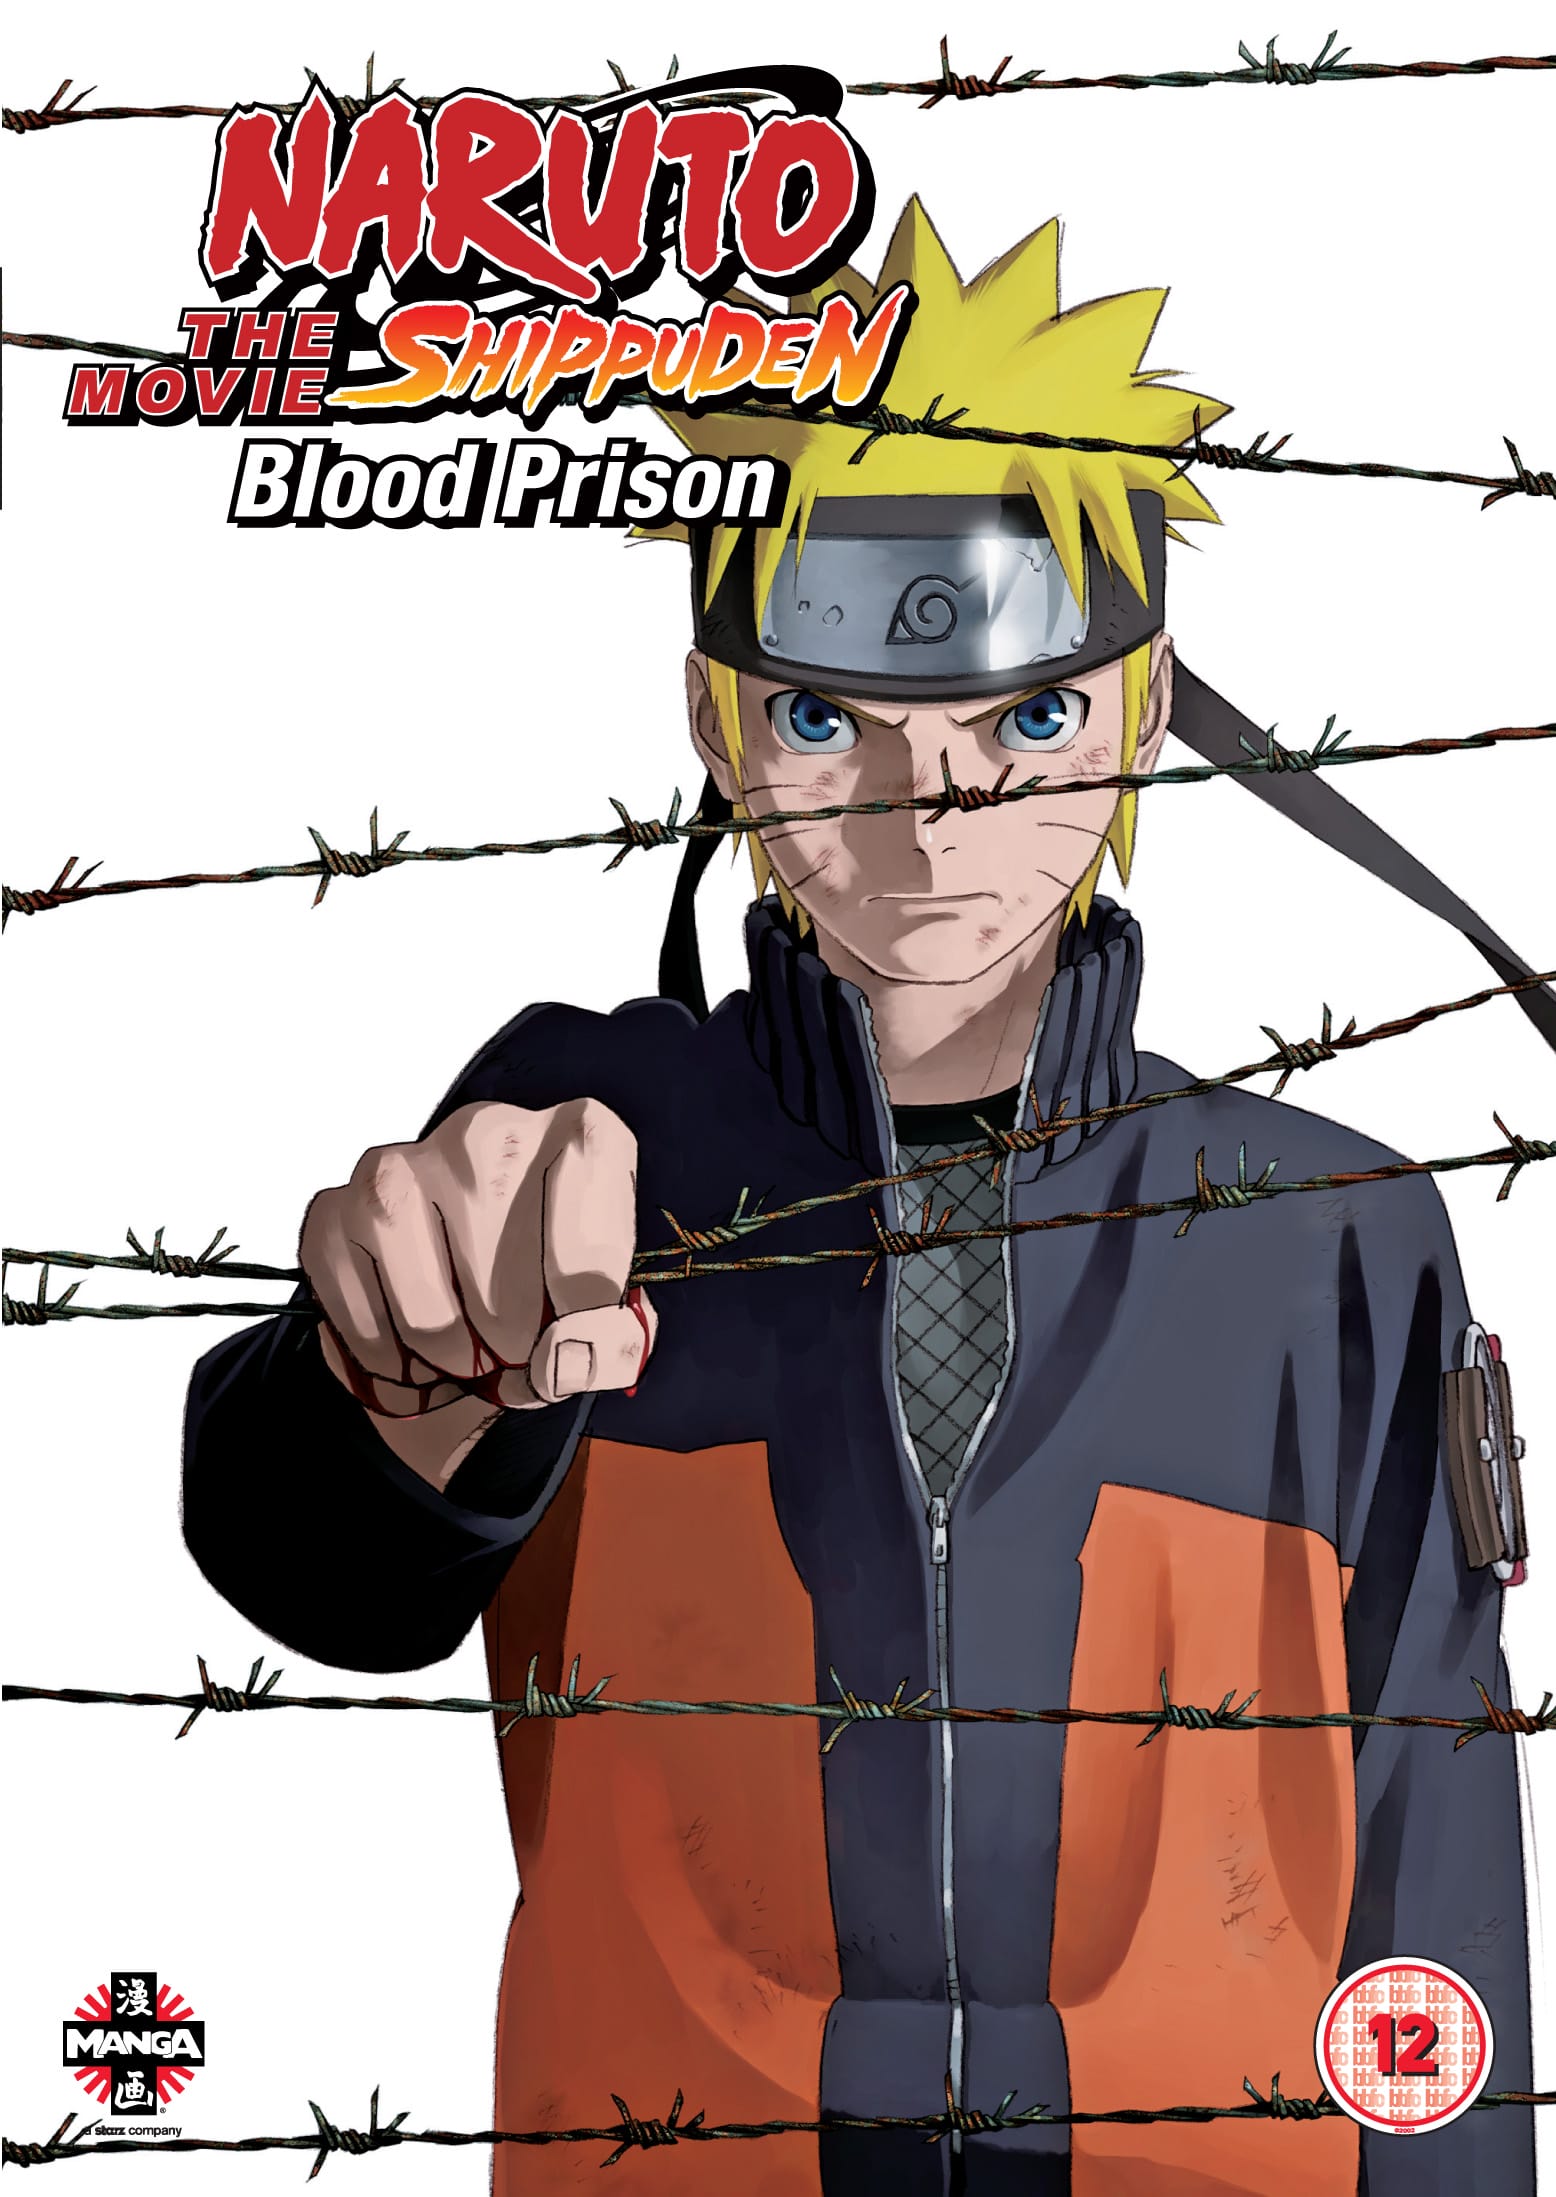 Blood Prison